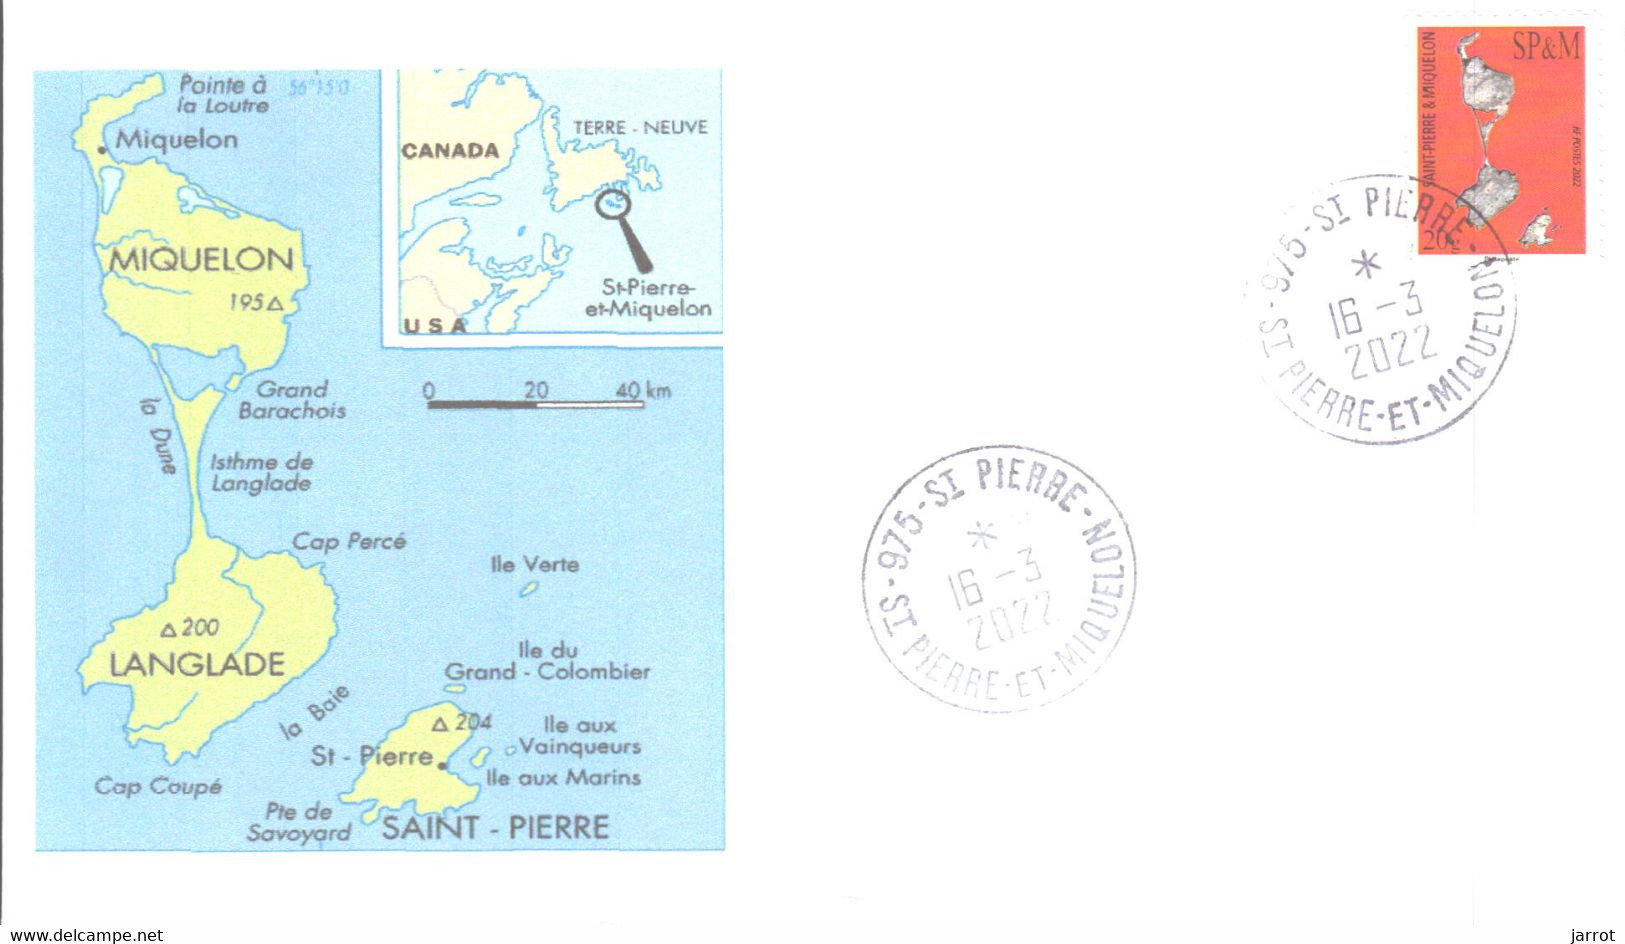 2022 Carte De L'archipel 16 Mars - FDC